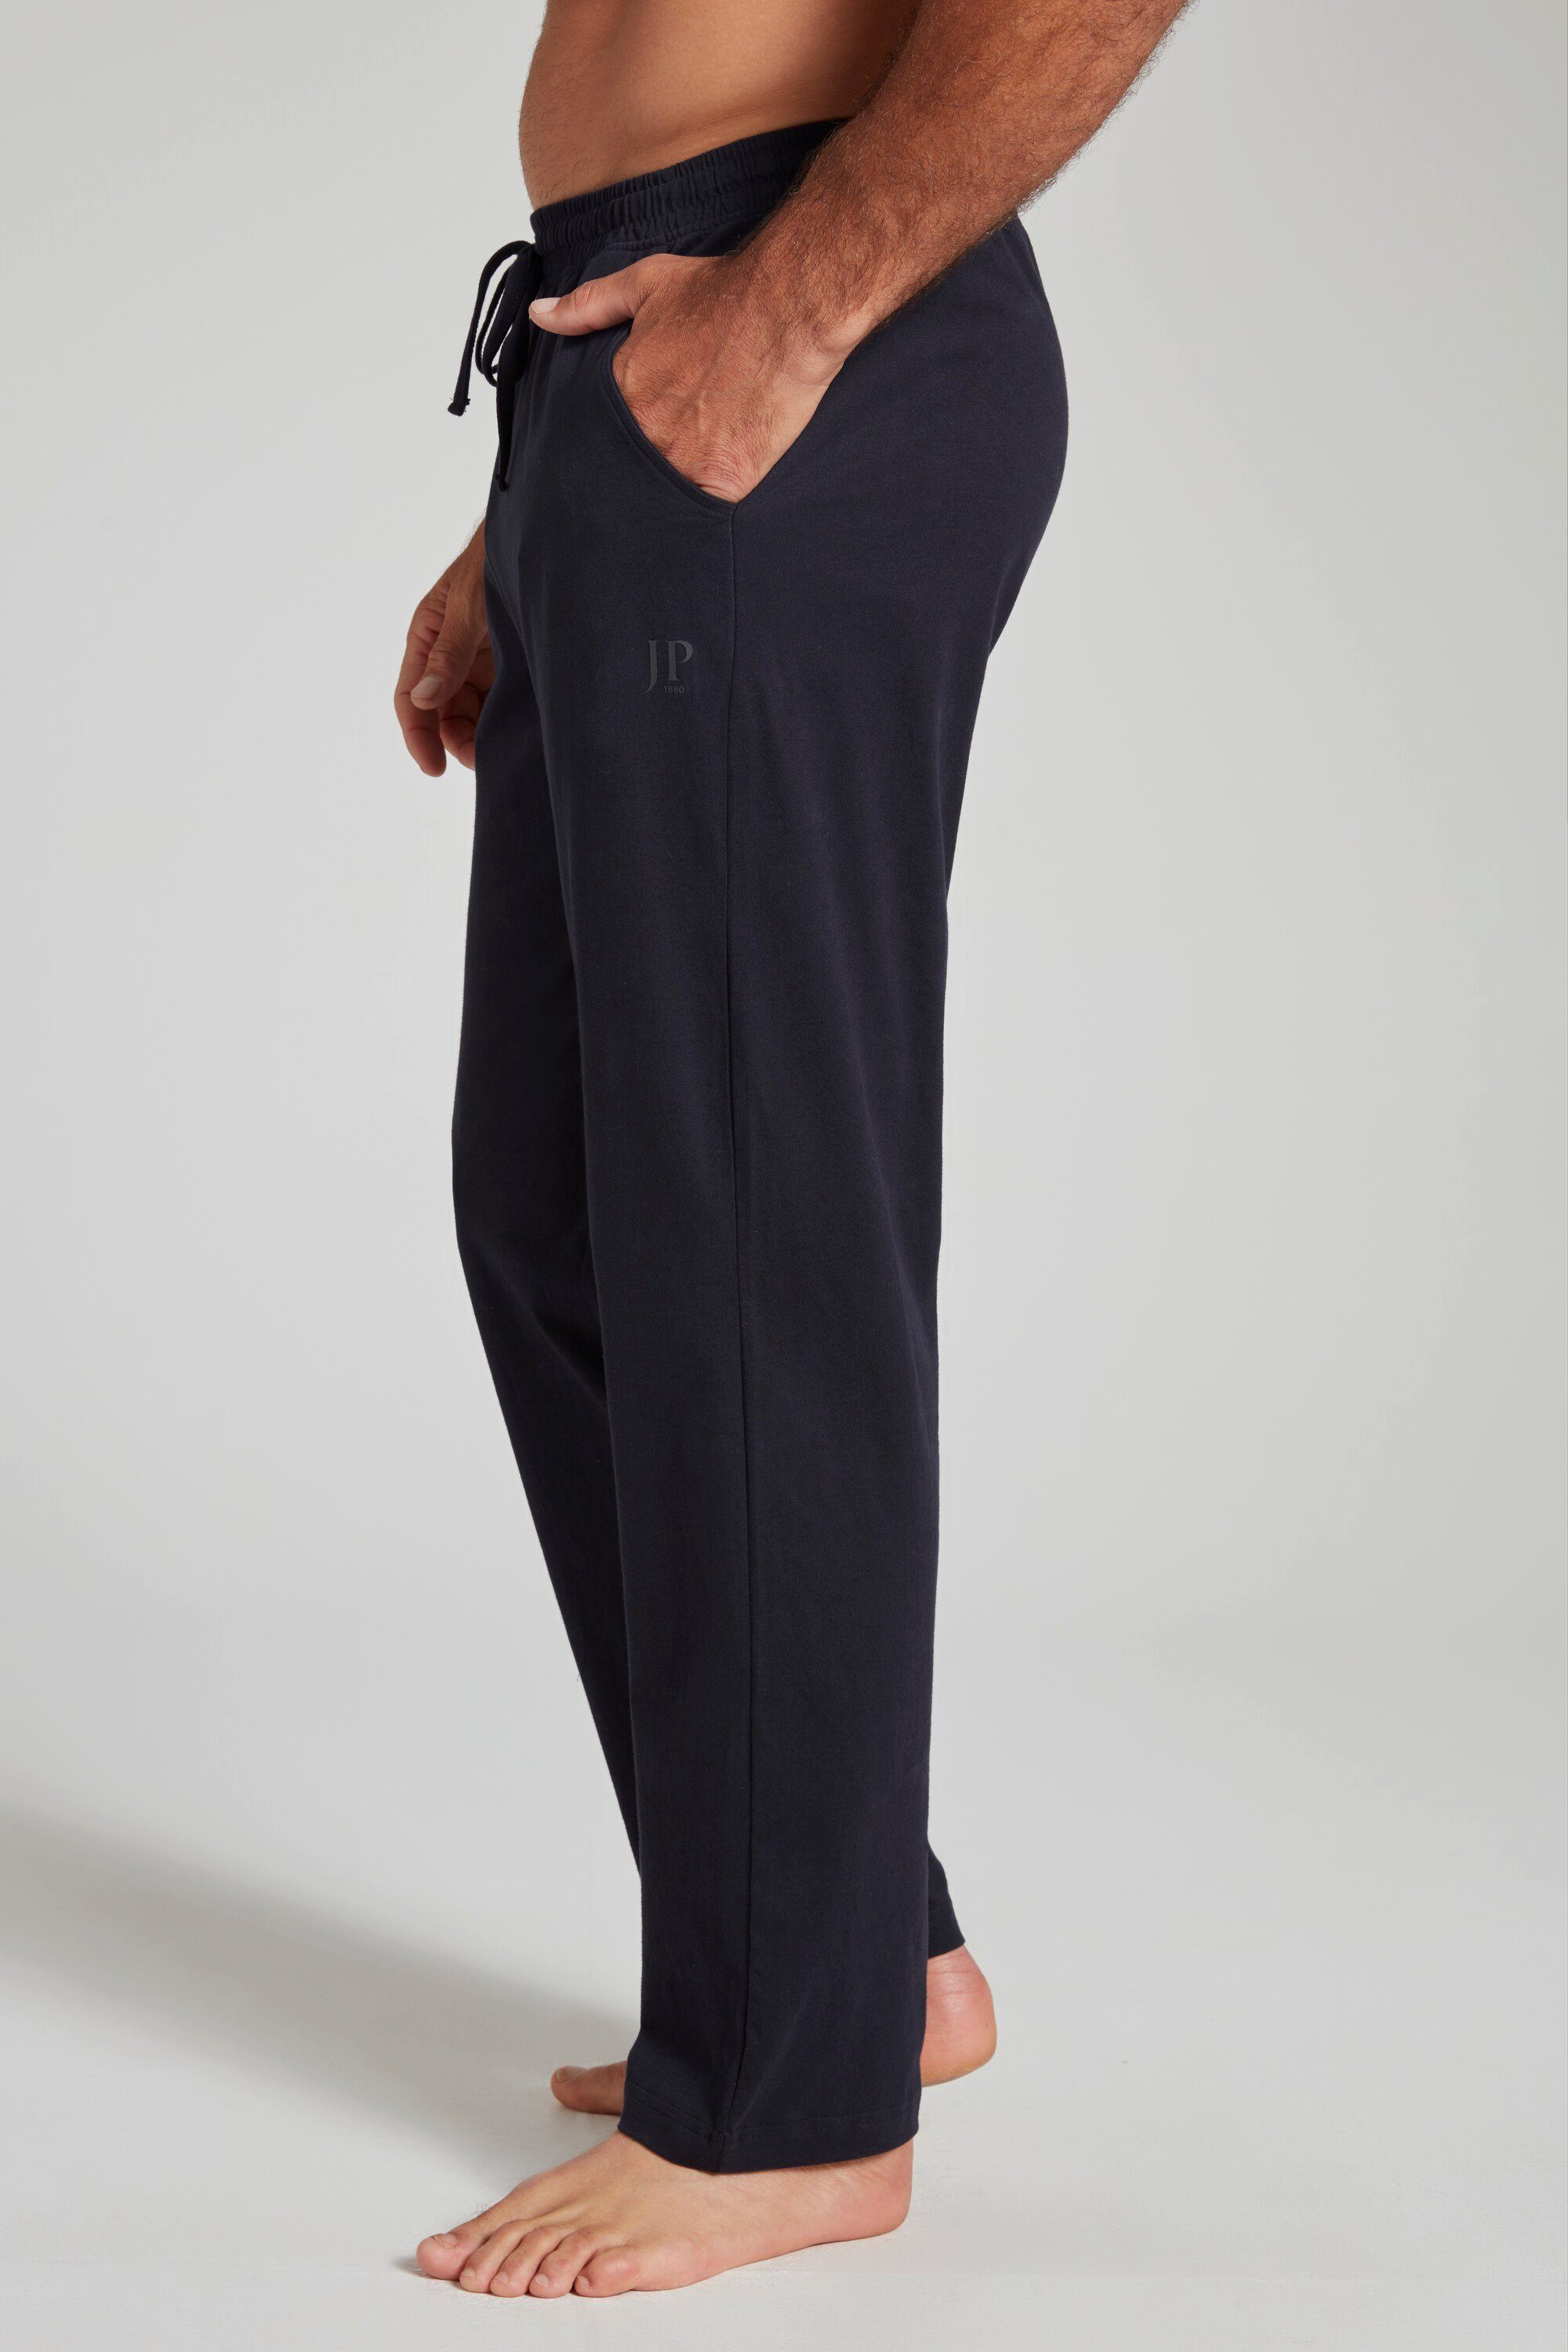 marine Schlafanzug dunkel Schlafanzug-Hose JP1880 Elastikbund Homewear Form lange